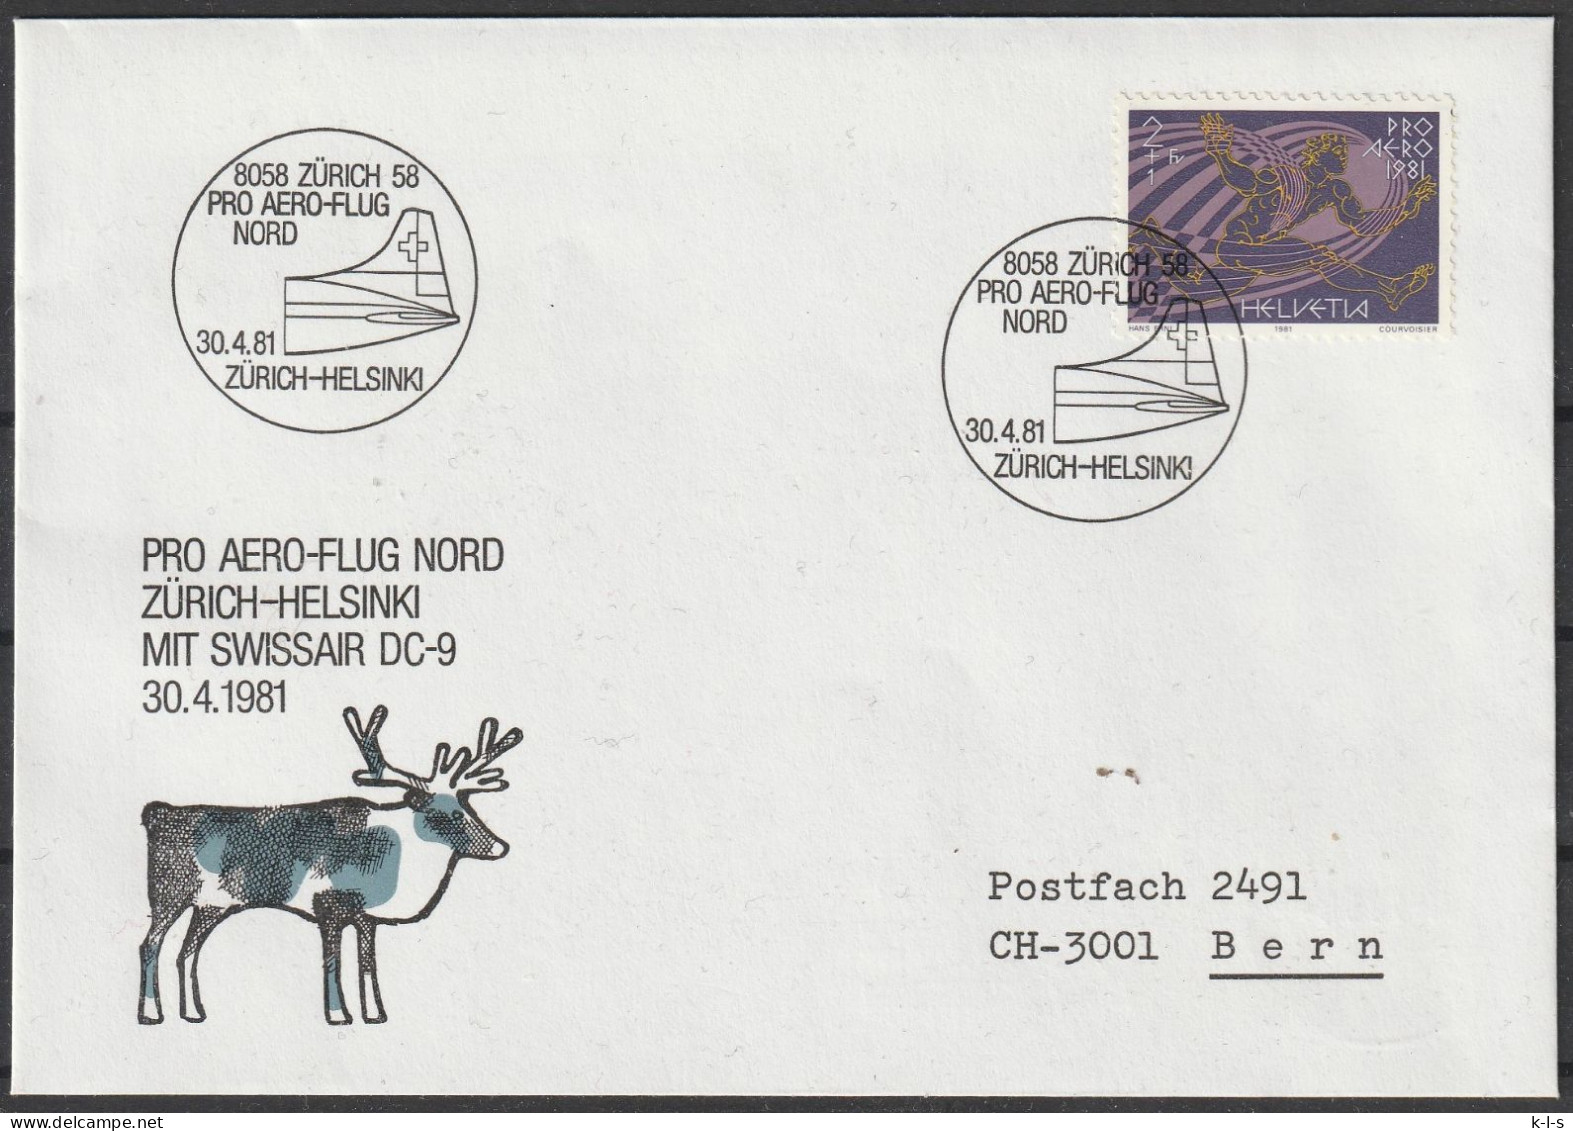 Schweiz: 1981, Fernbrief In EF, Mi. Nr. 1196, SoStpl. Zu Den Erinnerungsflug Am 30.04.1981, ZÜRICH-HELSINKI - First Flight Covers